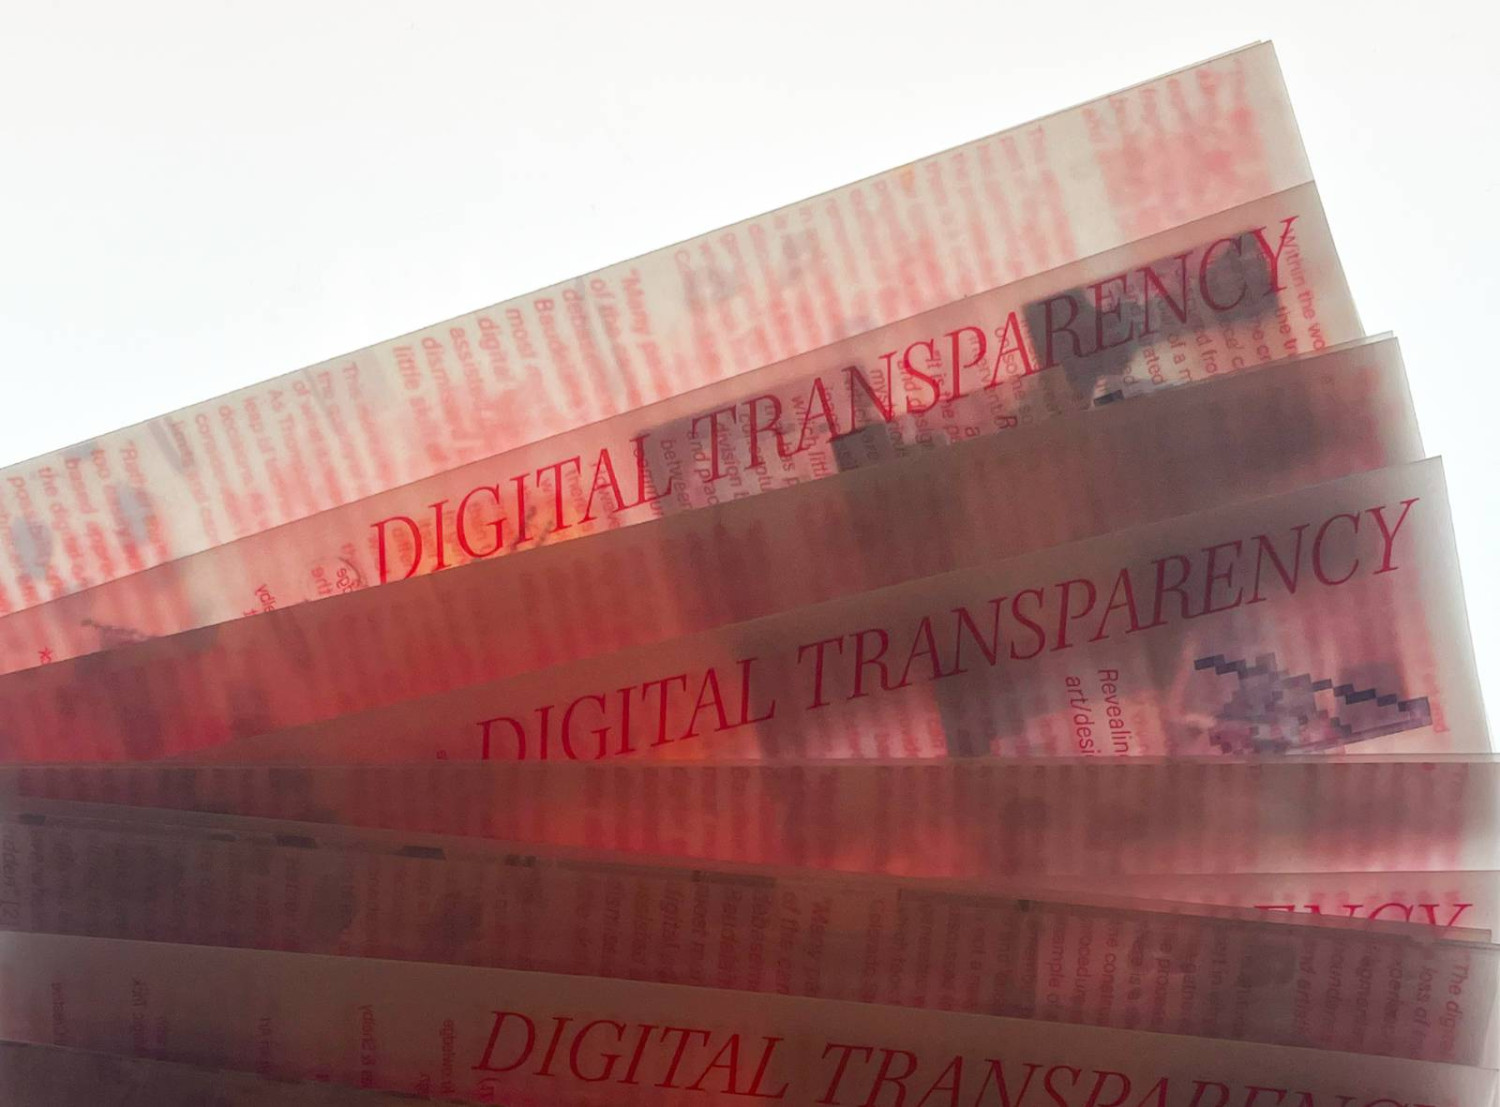 *Digital Transparency*, essay/ pamphlet